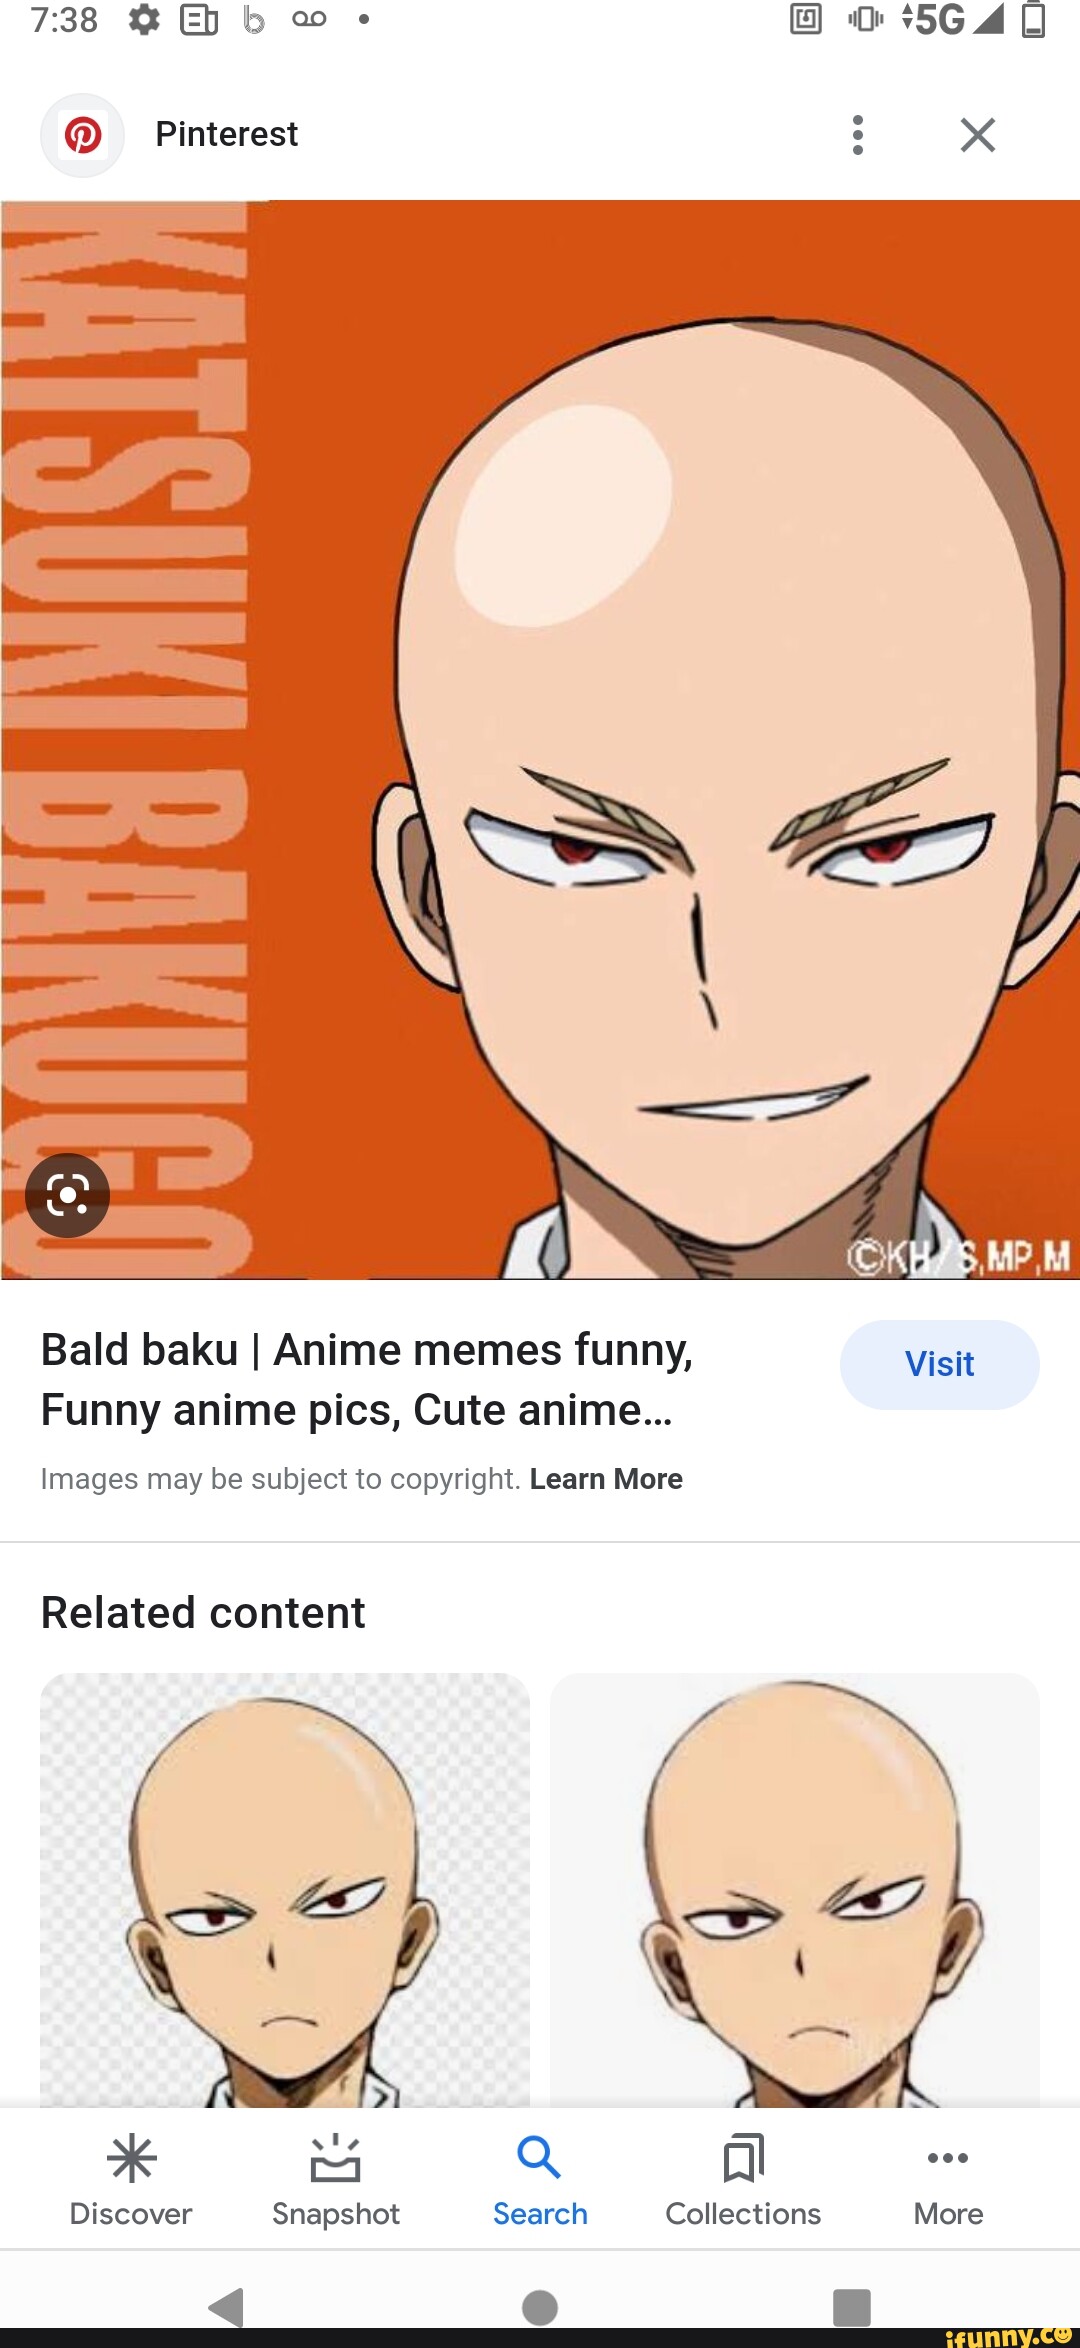 Pinterest  Pinterest memes, Anime memes, Memes